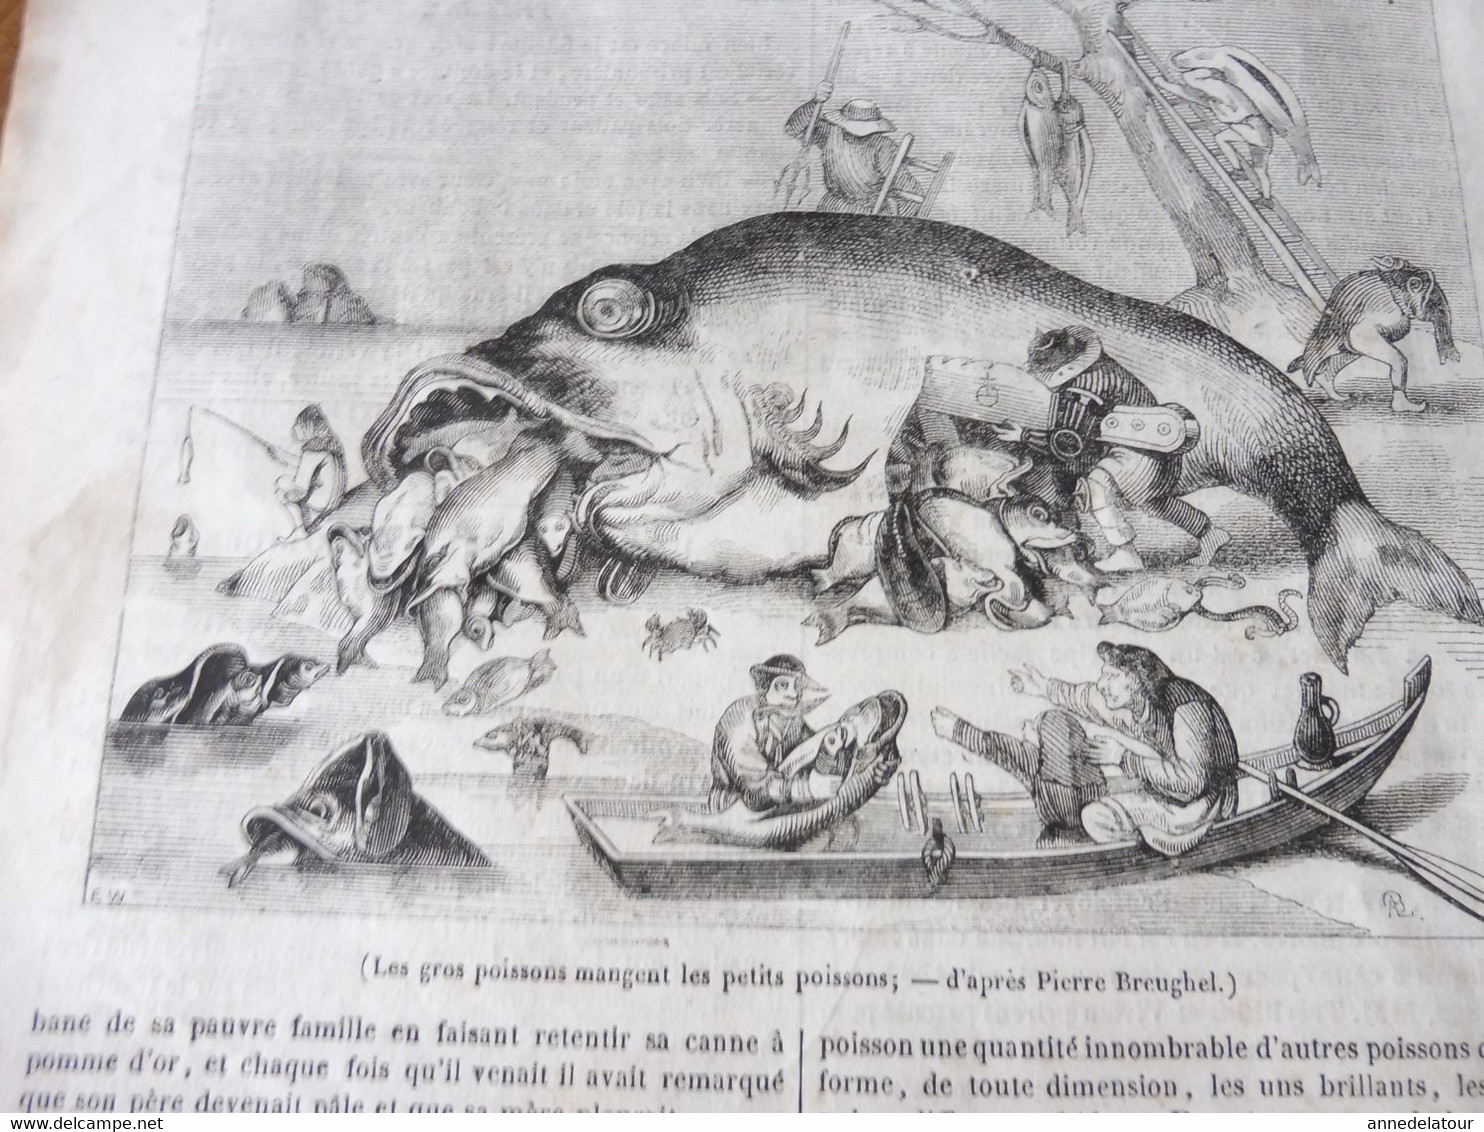 1839 MP Chevaliers de MALTE (les costumes) ; Les gros poissons mangent les petits poissons (gravure symbolique)